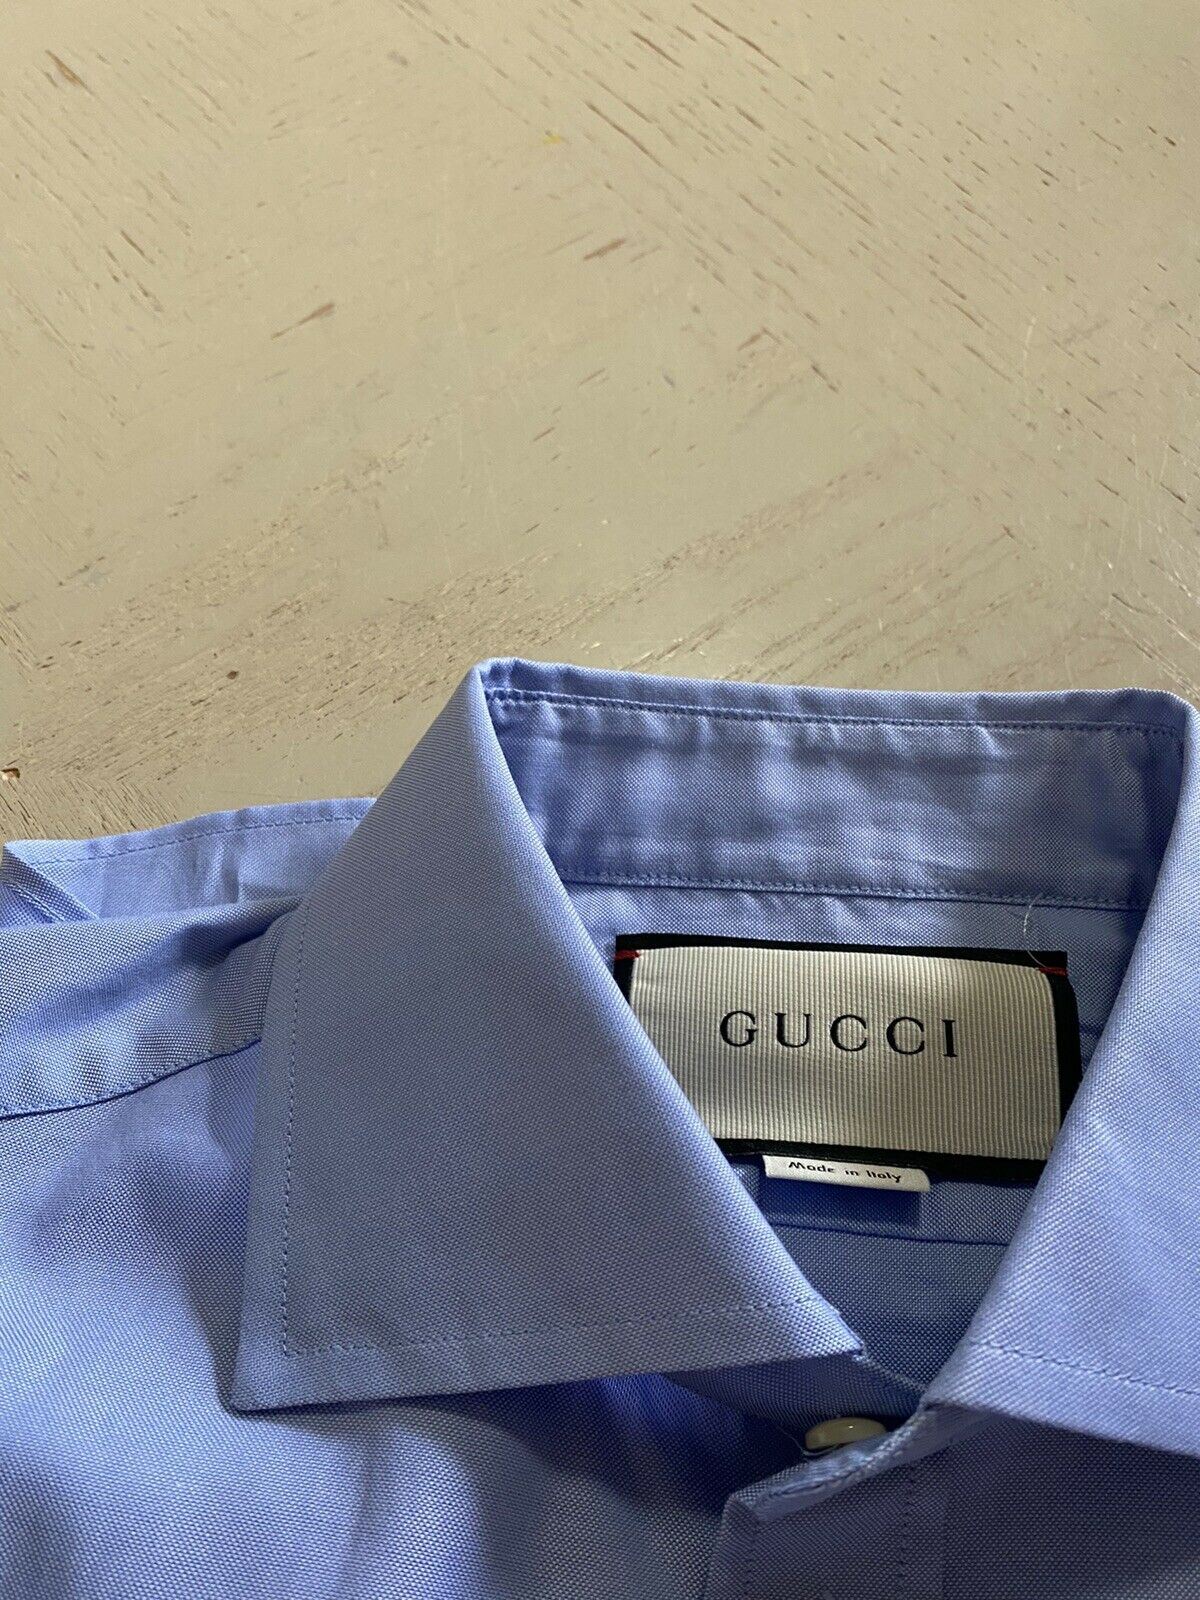 Neues 780 $ Gucci Herrenhemd Blau 36/14 Italien